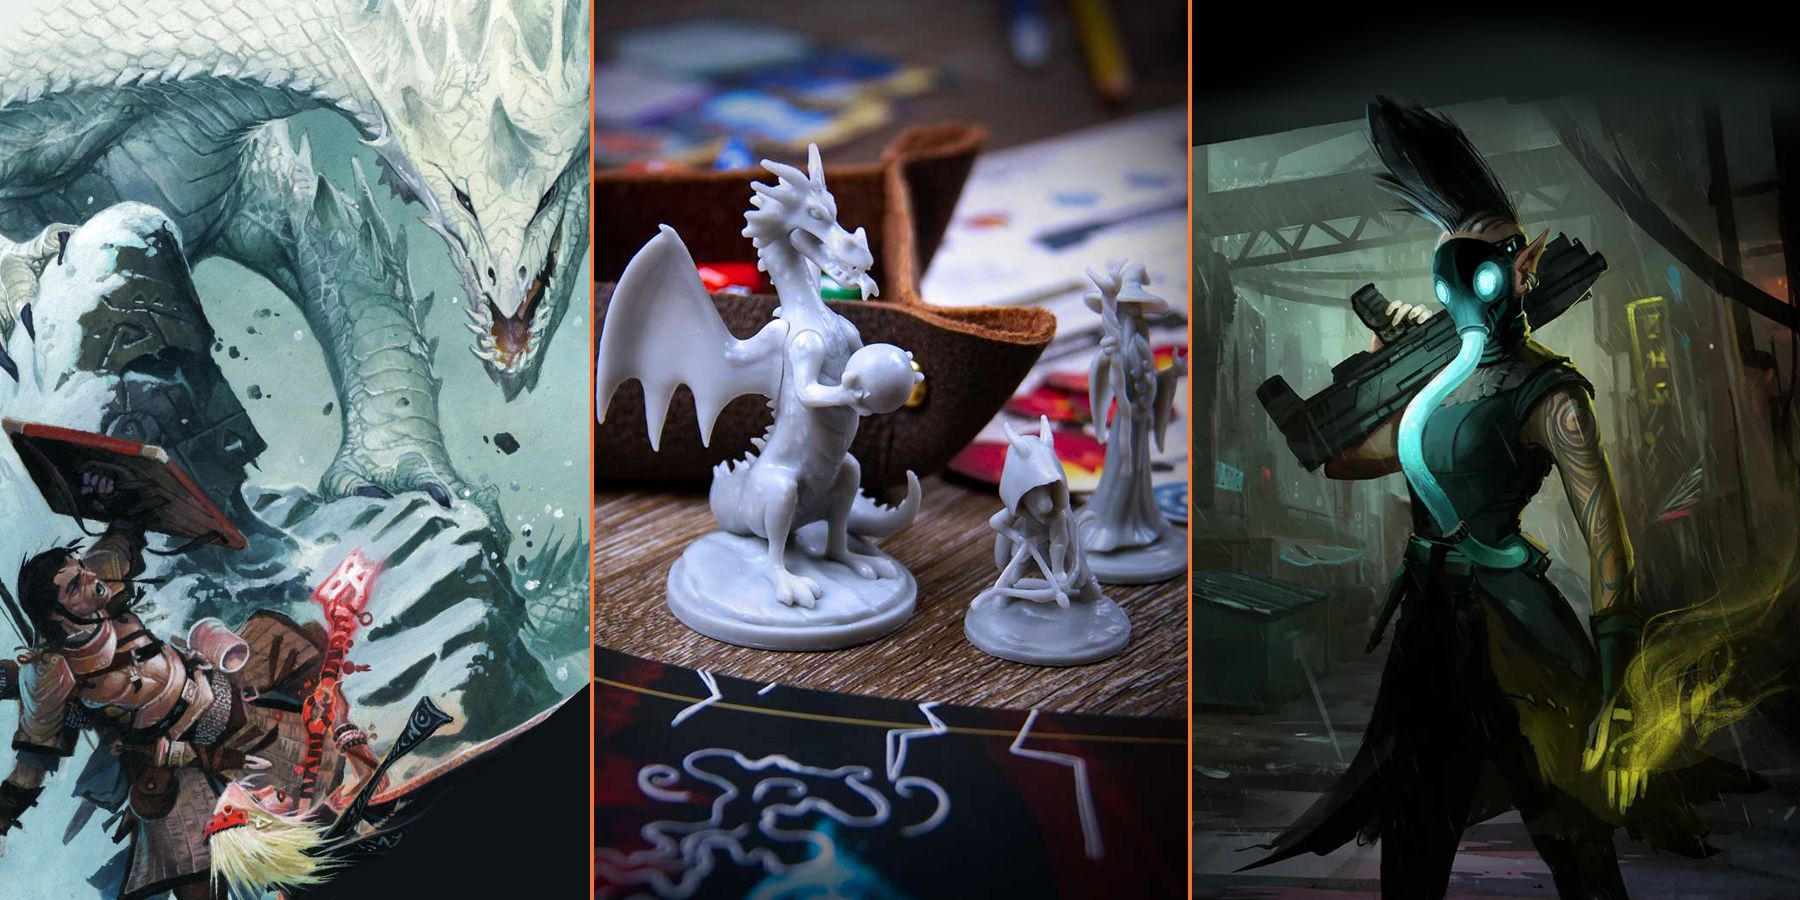 15-Jogos-de-mesa-para-jogar-se-você-gosta-de-Dungeons-Dragons_FI-01-1